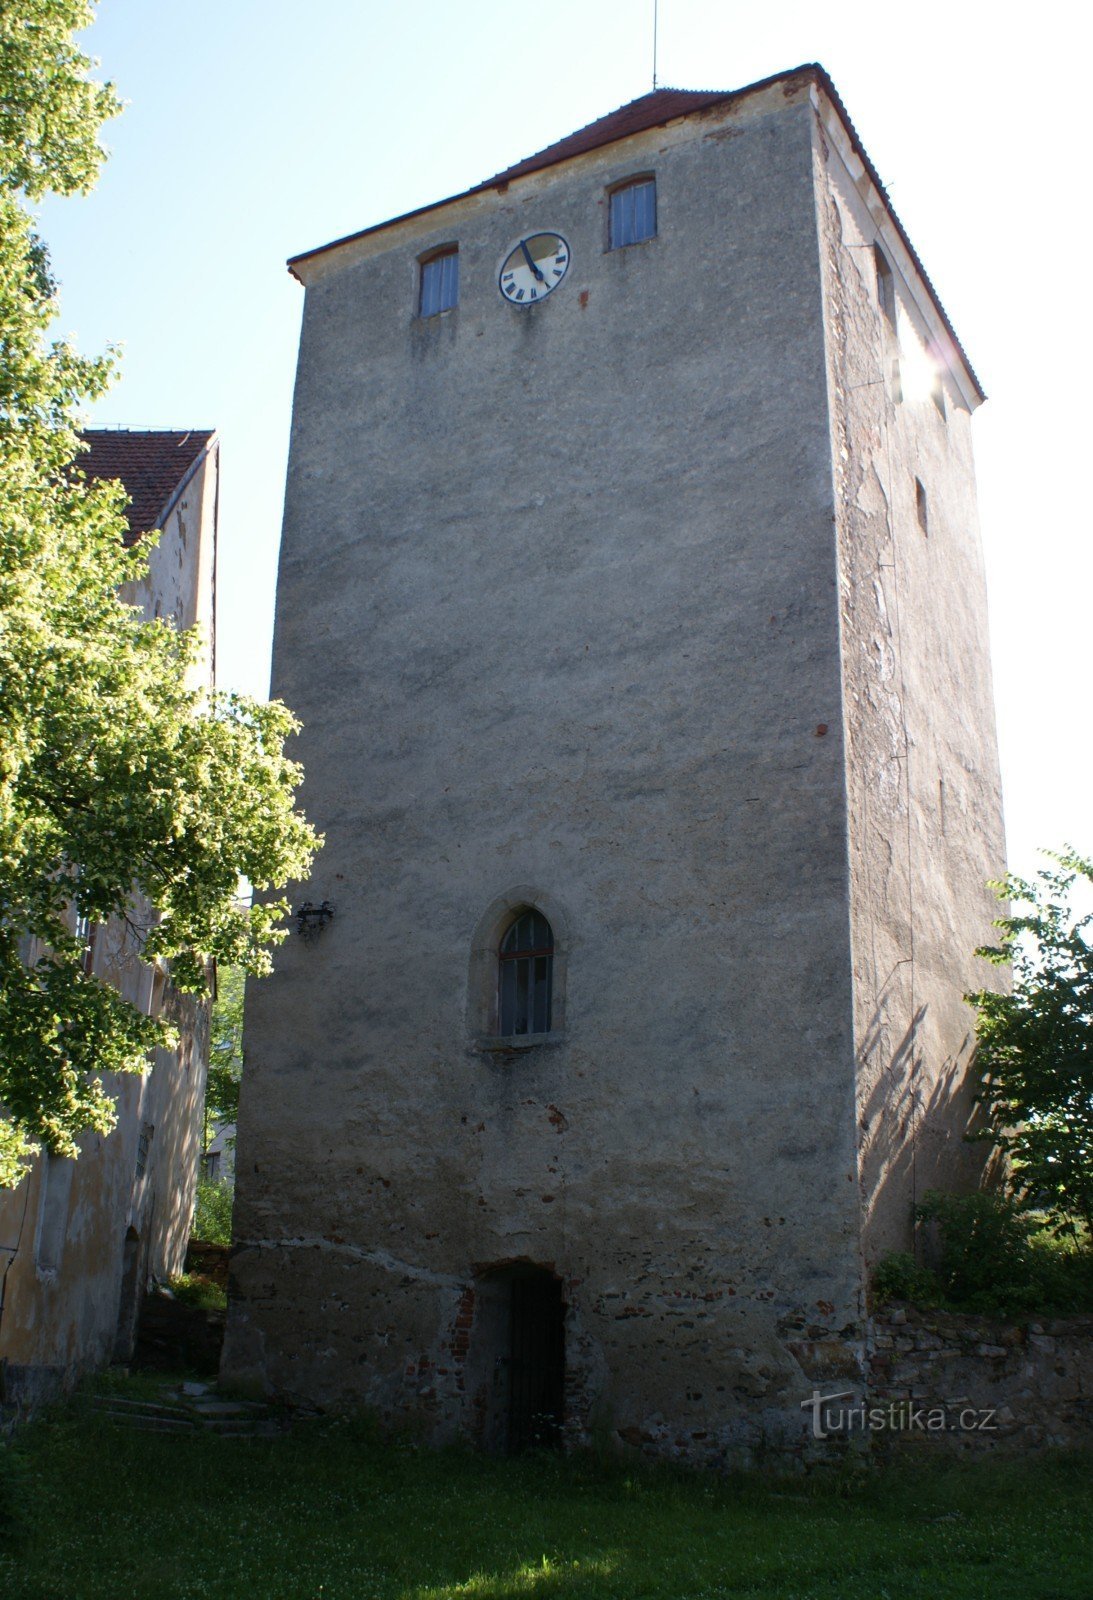 centro da fortaleza - torre residencial